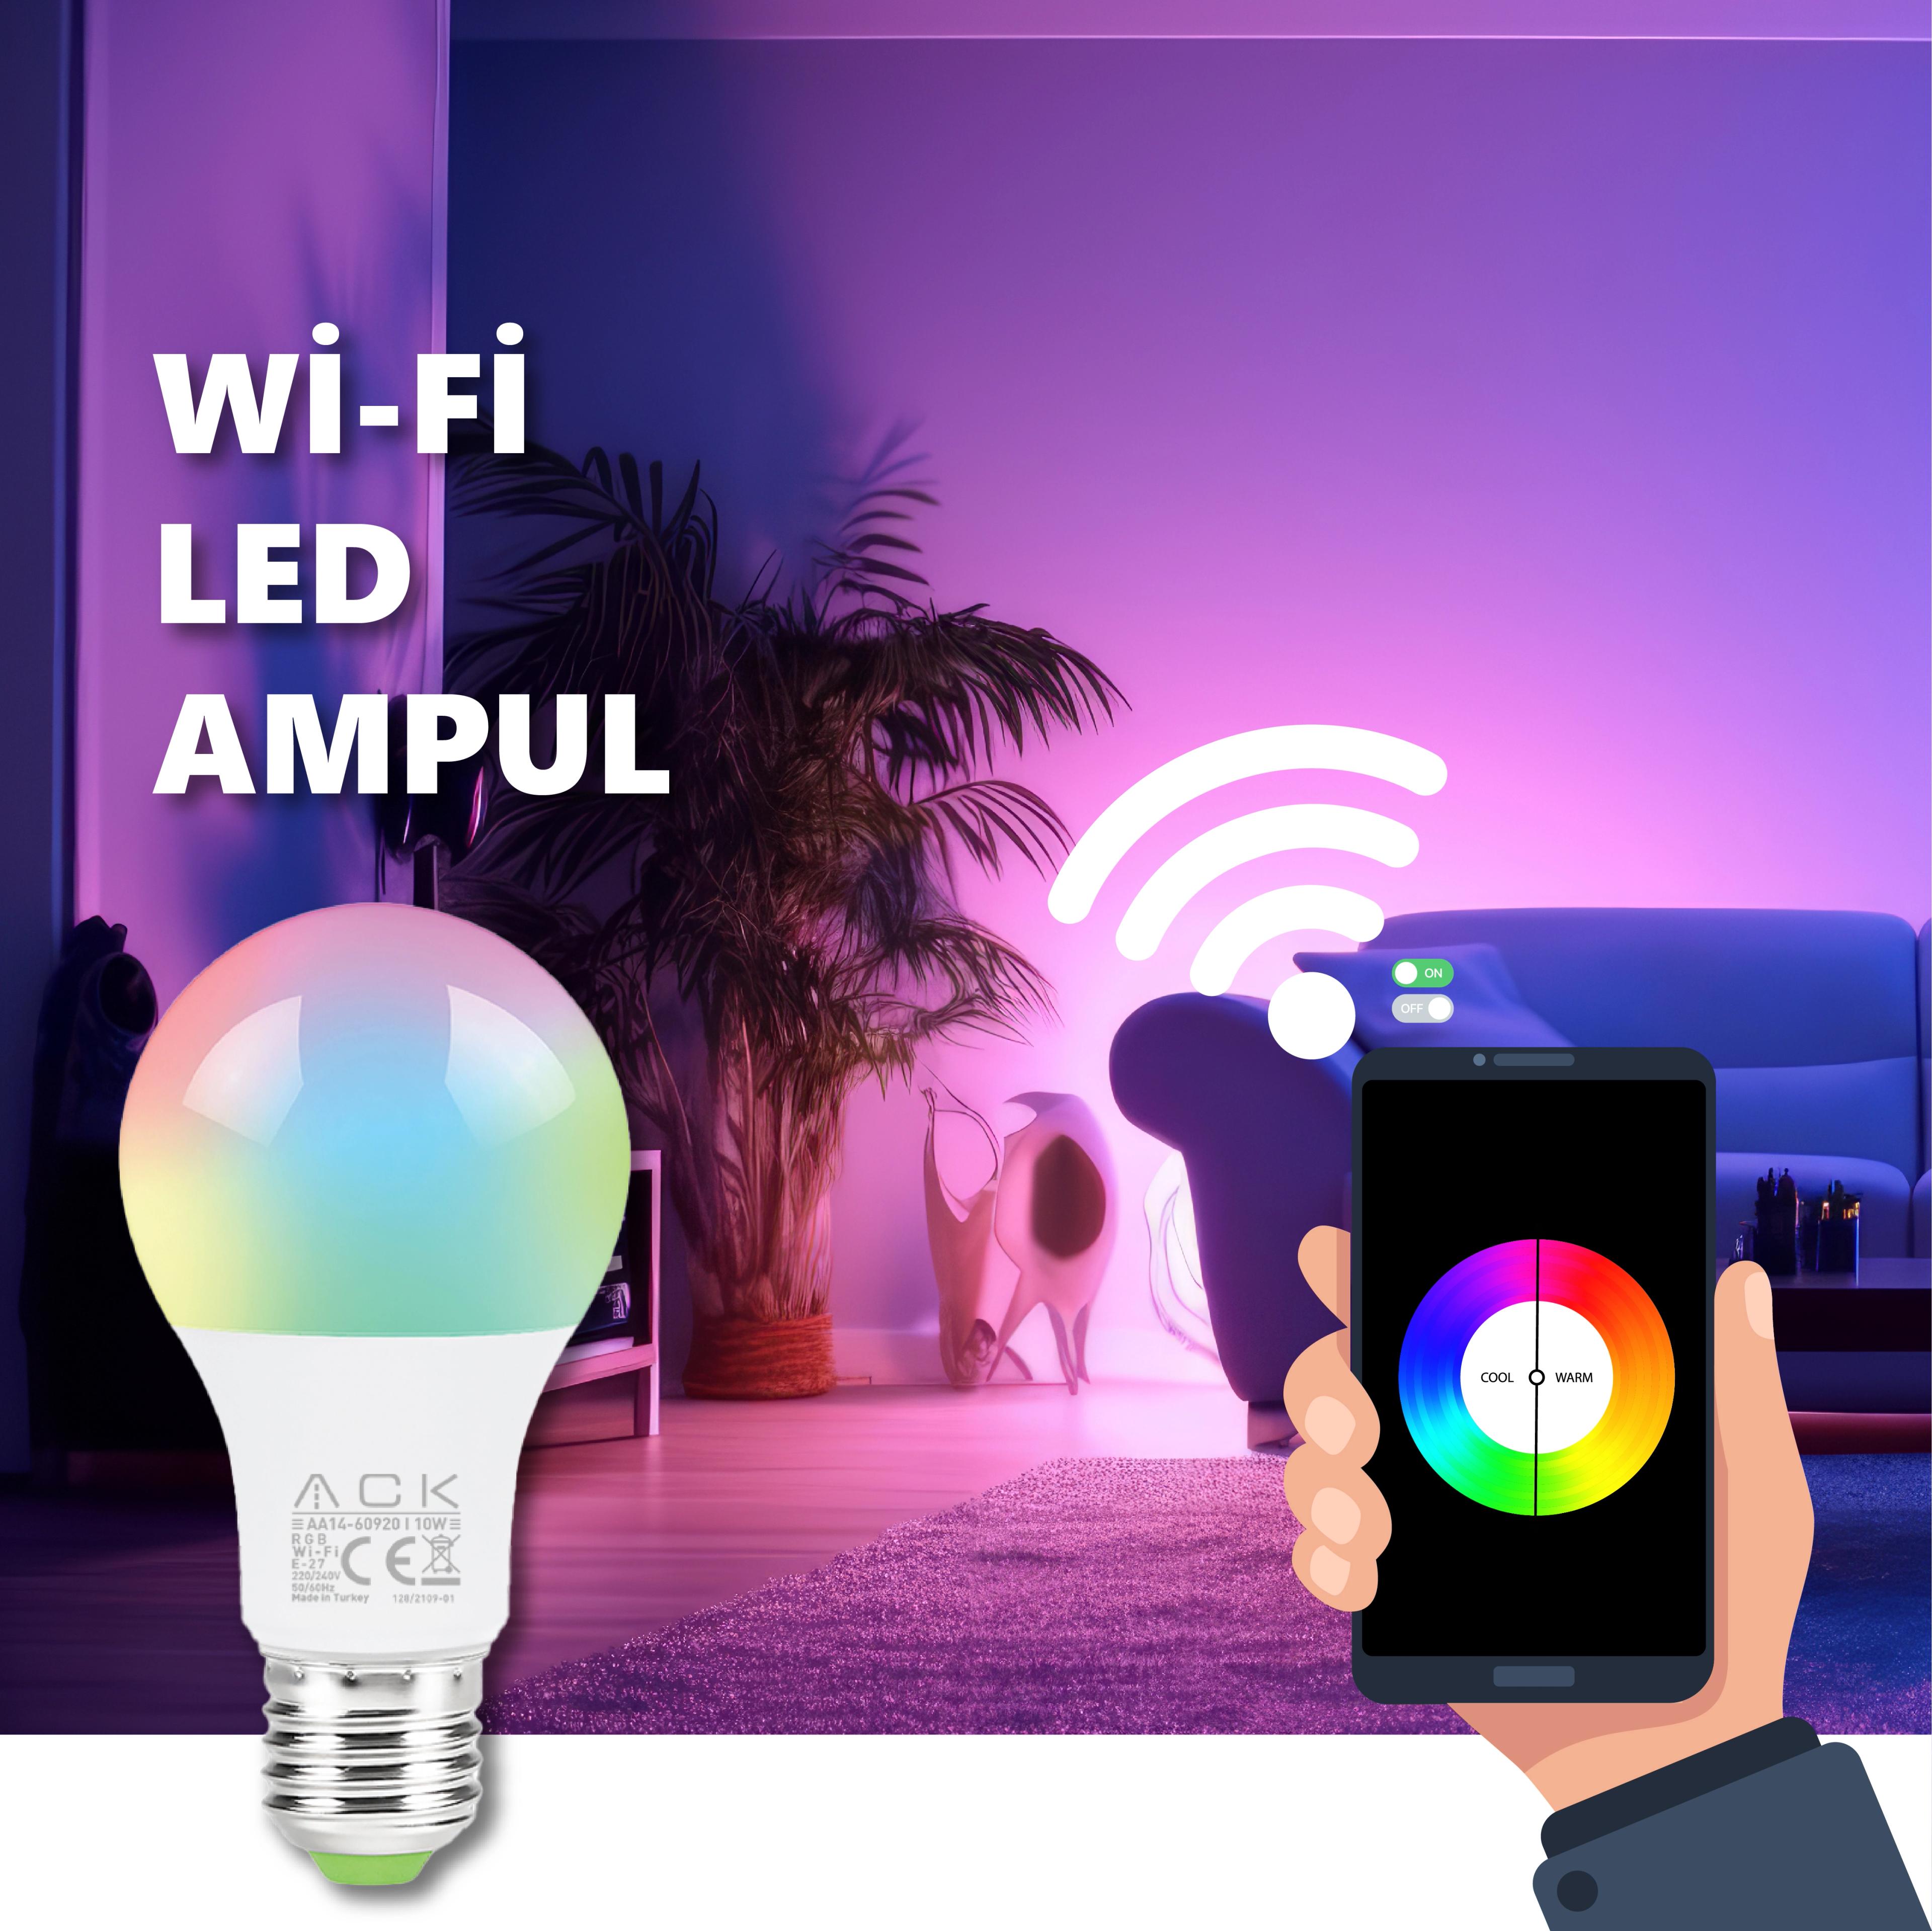 ACK Wi-Fi LED Ampul 220V 10W E27